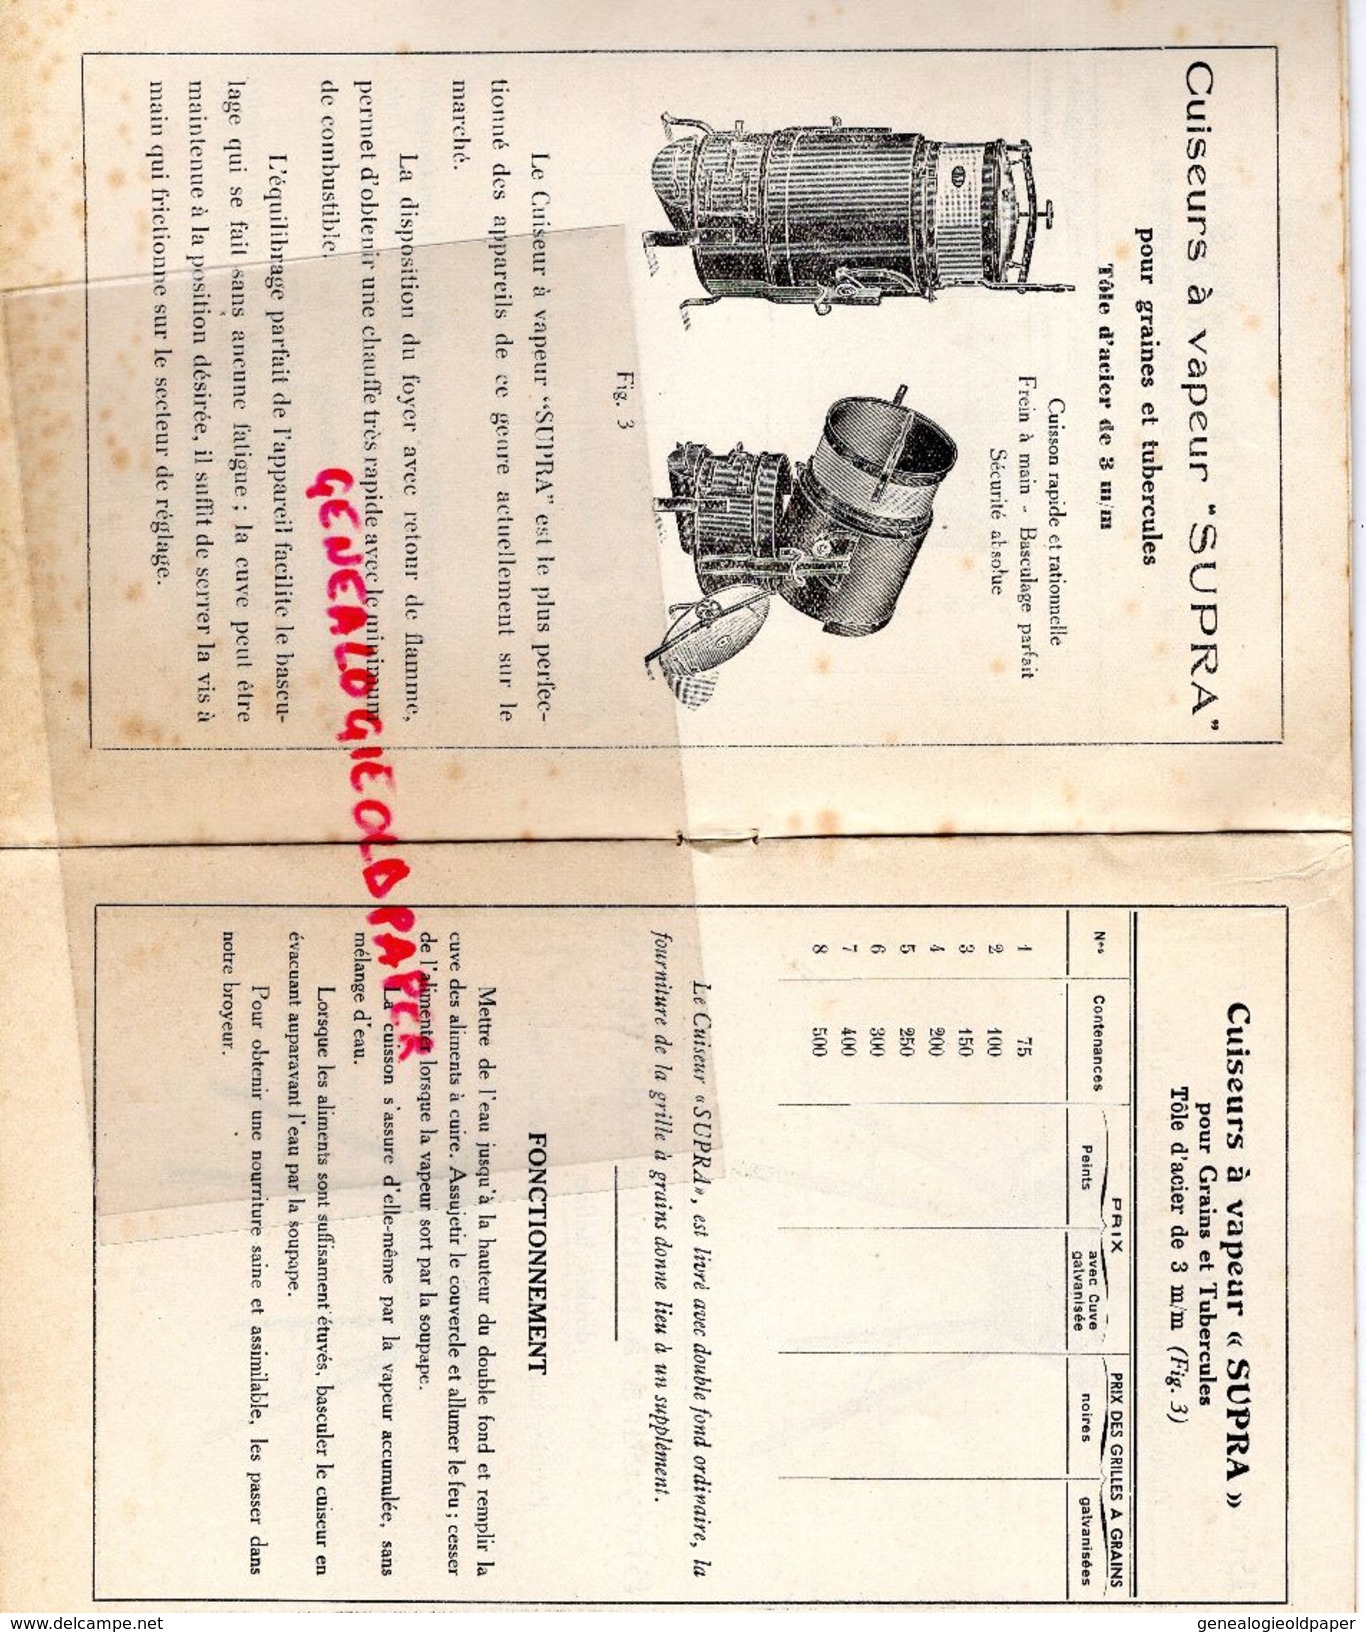 89- VERVIGNY GARE- RARE CATALOGUE CHAUDRONNERIE AGRICOLE INDUSTRIELLE-BOUCHERON SOILLY-SUPRA- 1934 - Straßenhandel Und Kleingewerbe